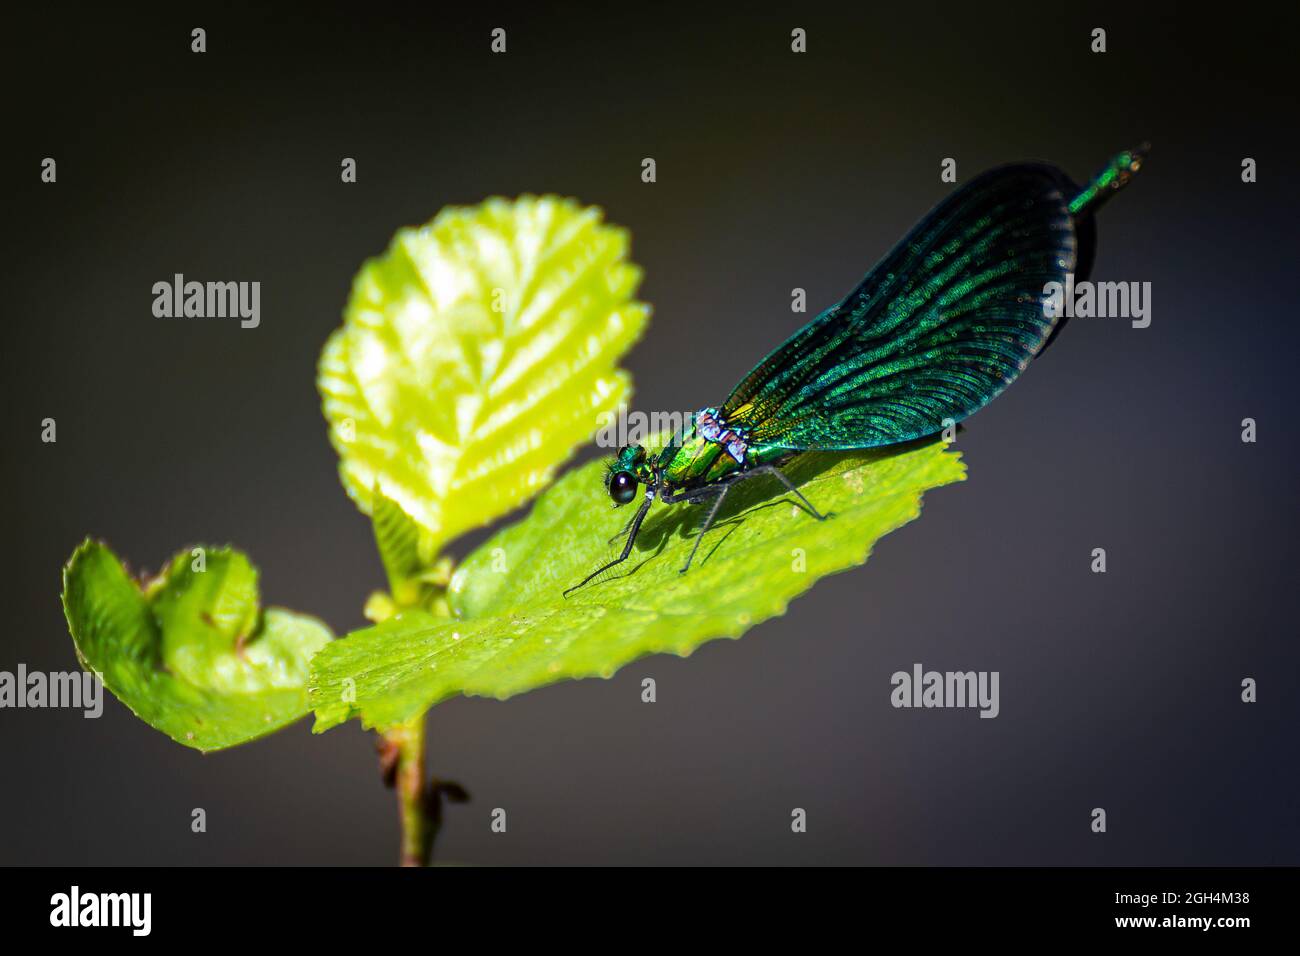 Nahaufnahme einer grünen Libelle, die auf einem Blatt liegt Stockfoto